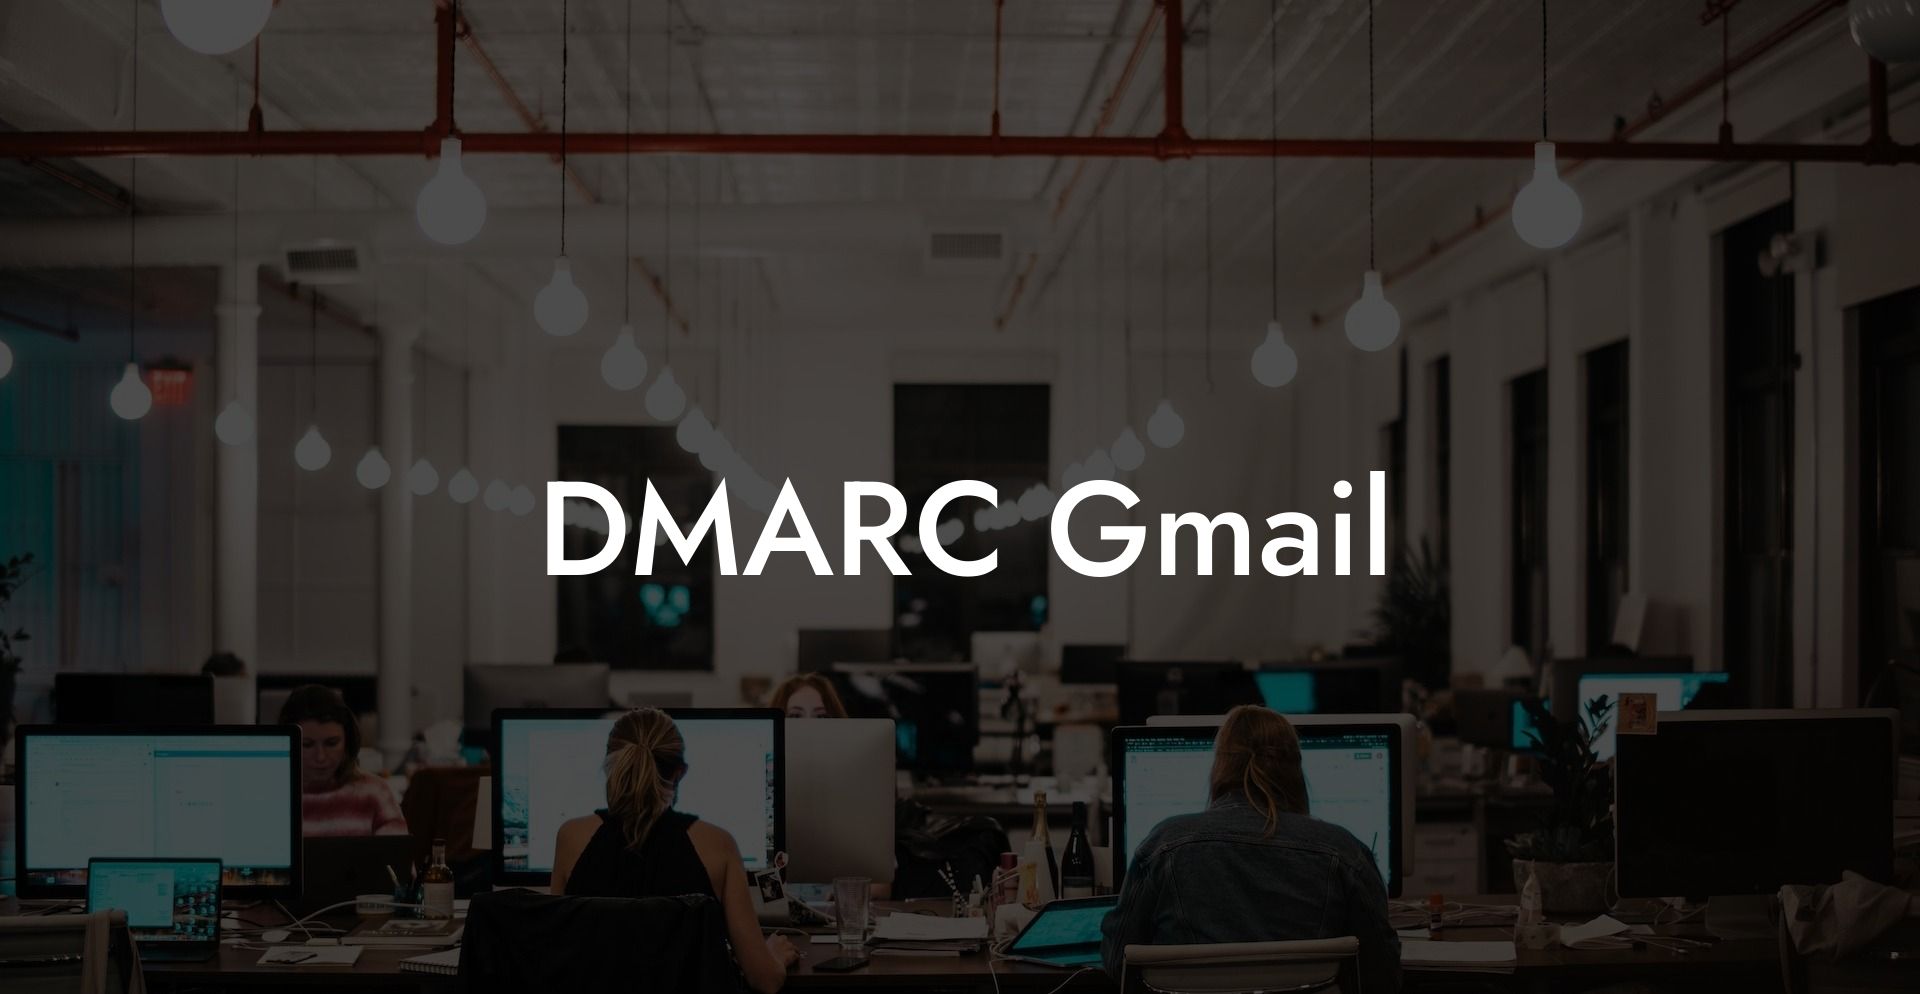 DMARC Gmail